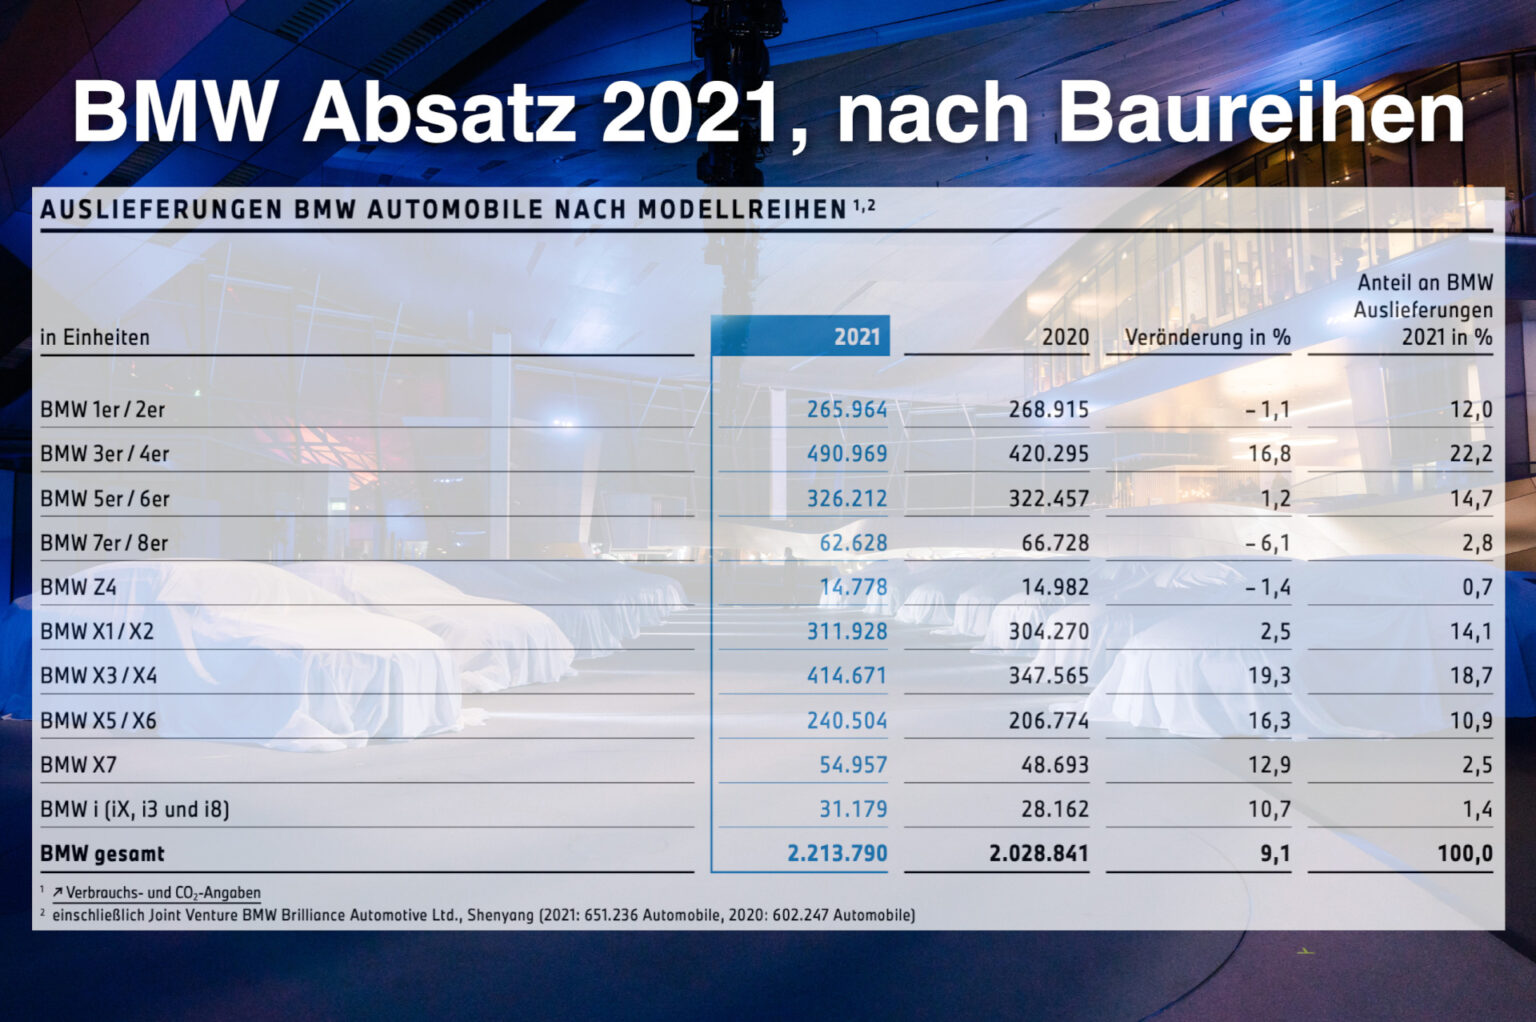 BMW-Absatz-2021-nach-Baureihen-weltweit-t-1536x1022.jpg